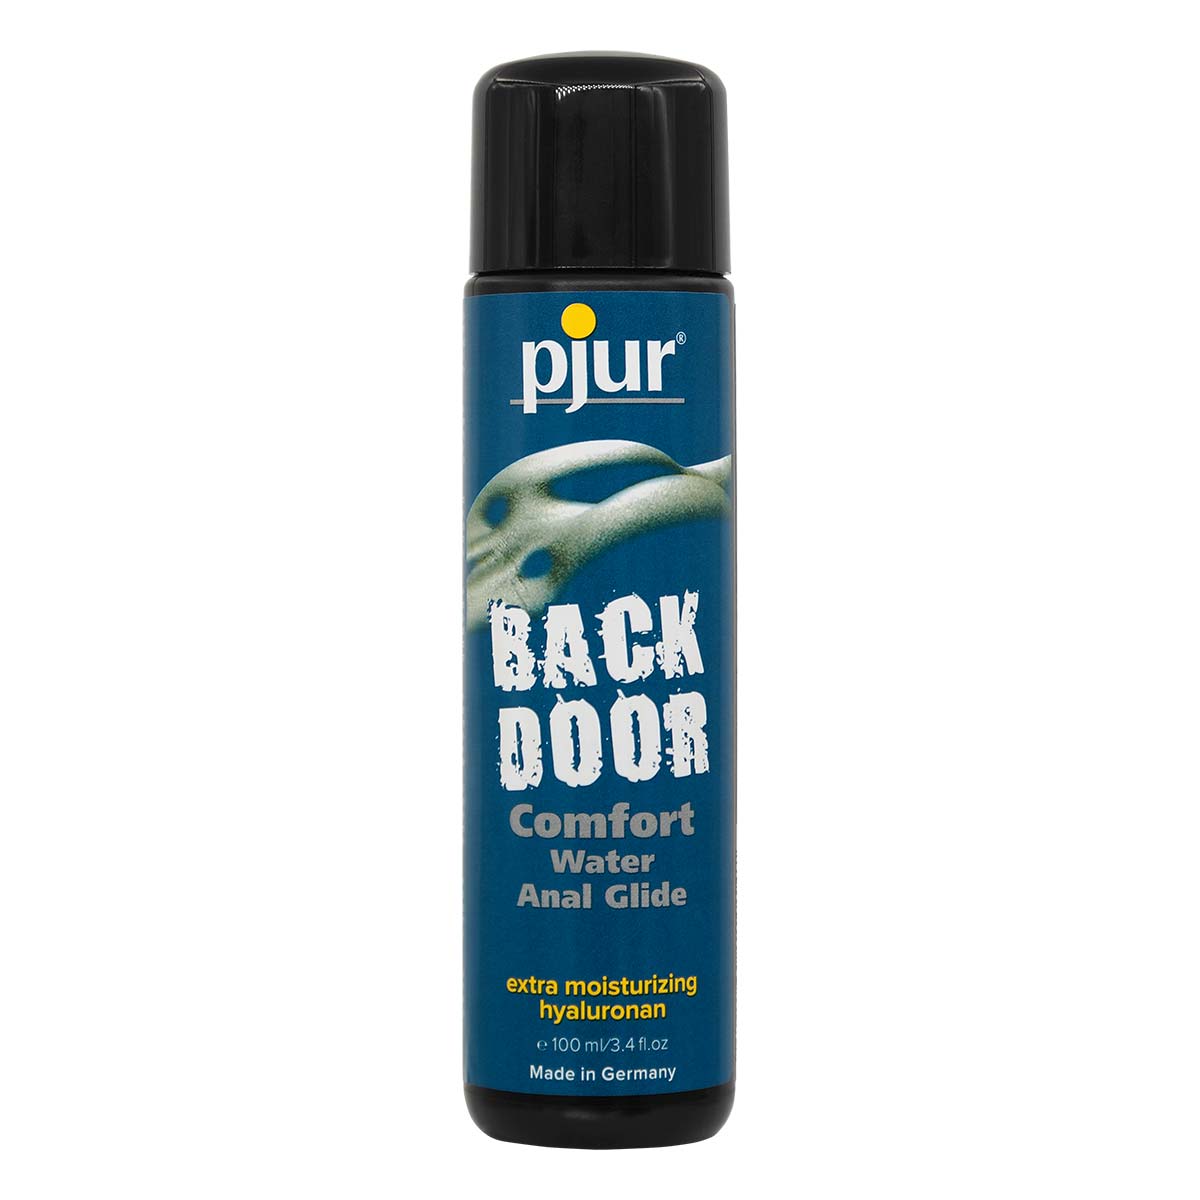 pjur BACK DOOR COMFORT 舒适肛交专用 100ml 水基润滑液-p_2